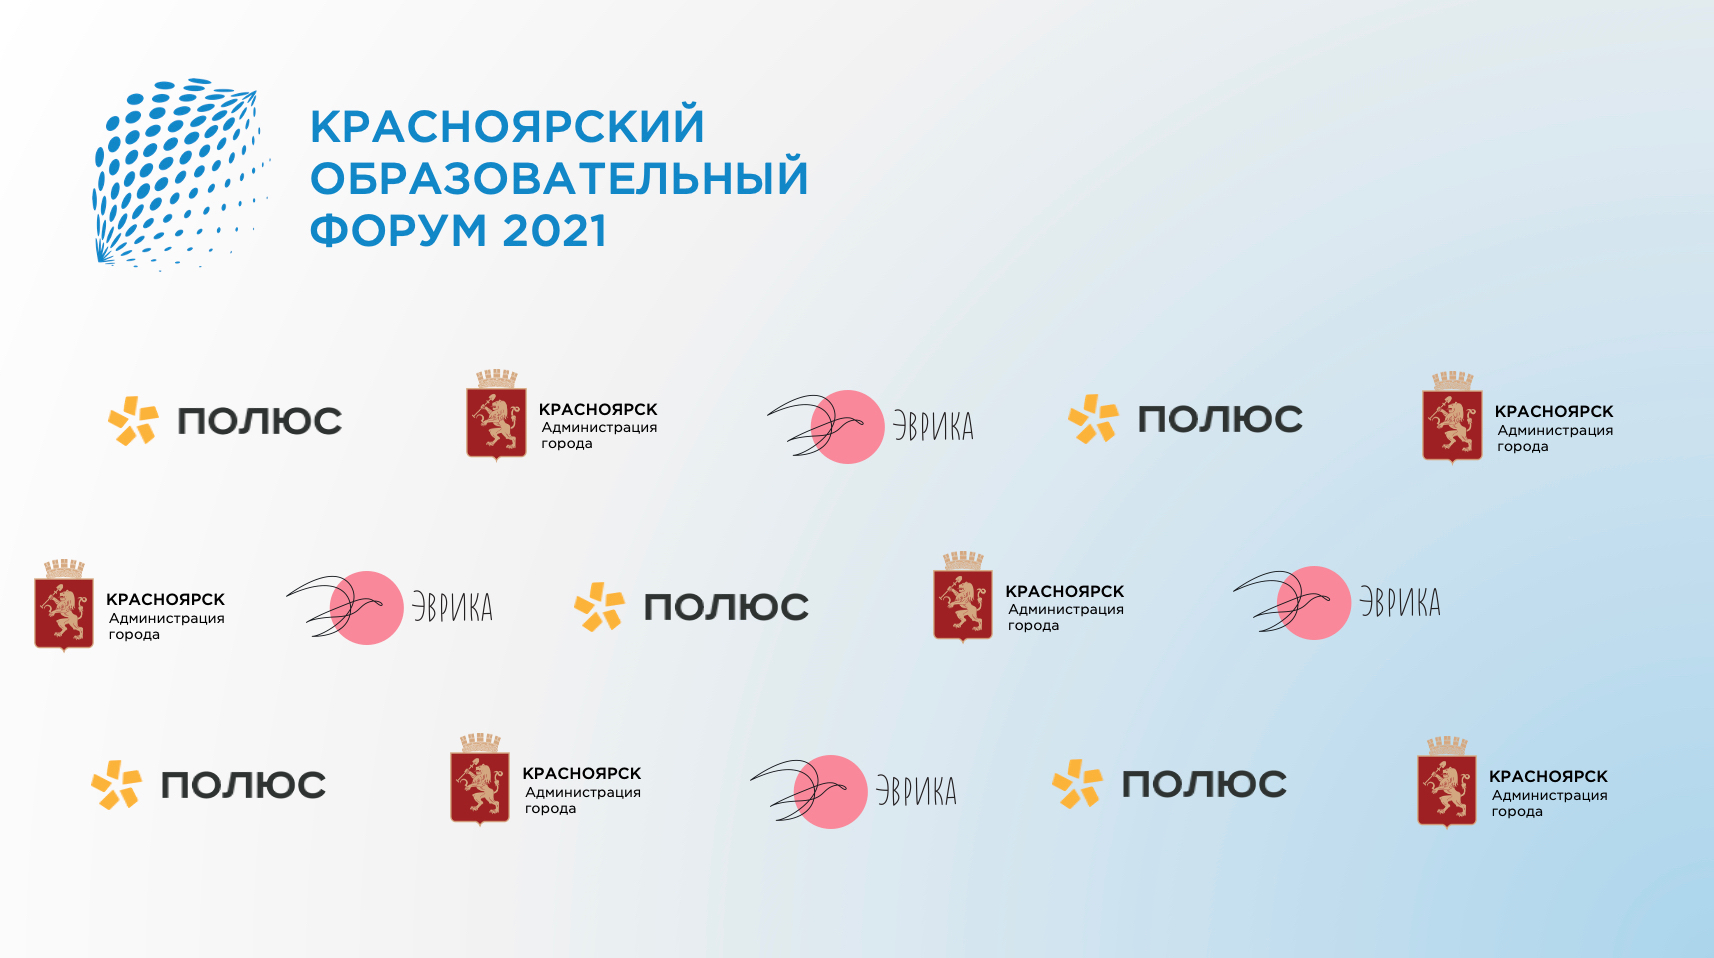  На XVII Красноярском городском форуме представят новые образовательные проекты 